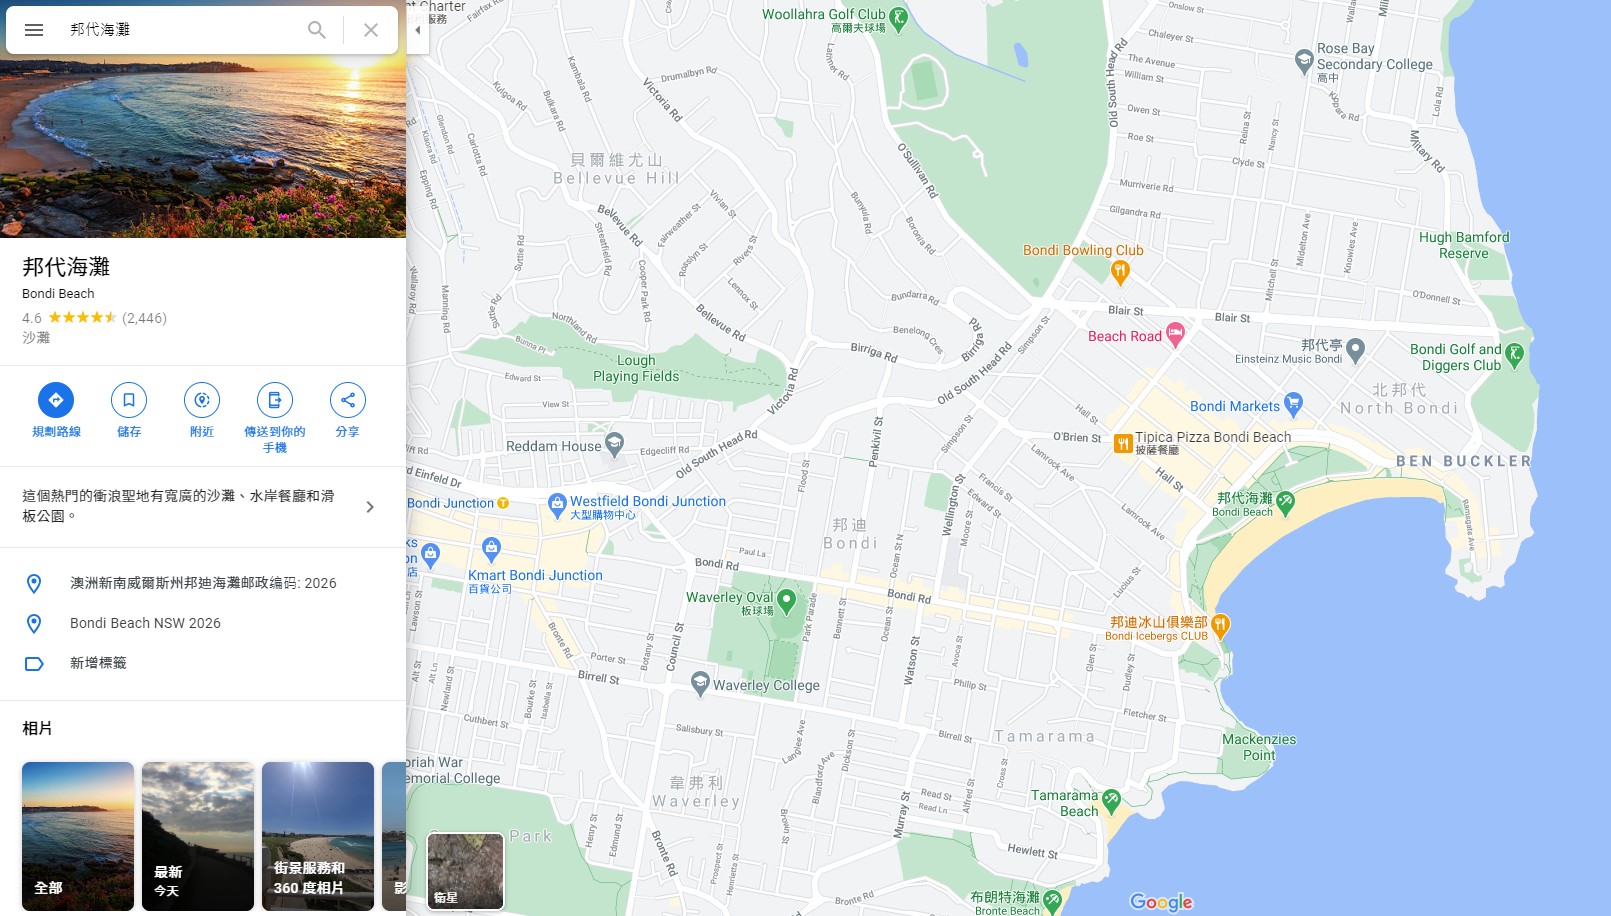 【2023邦代海灘】Bondi Beach 澳洲雪梨/悉尼景點－夏天的聖誕 @GINA環球旅行生活